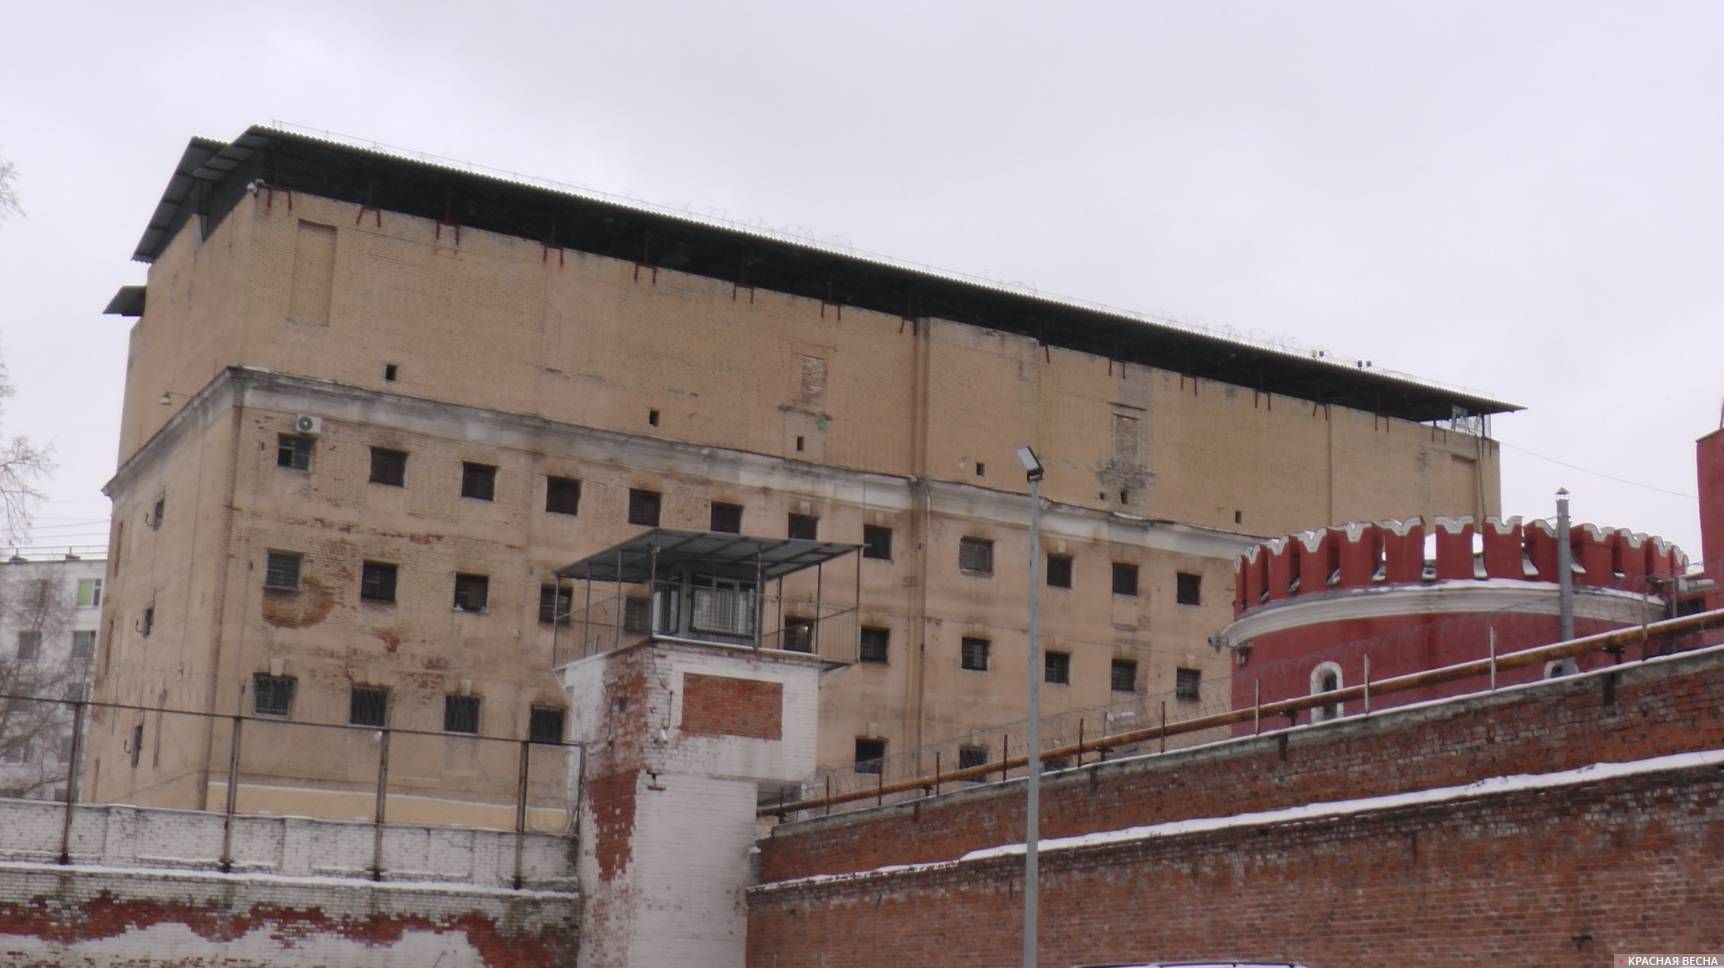 Бутырская тюрьма (СИЗО-2). Москва